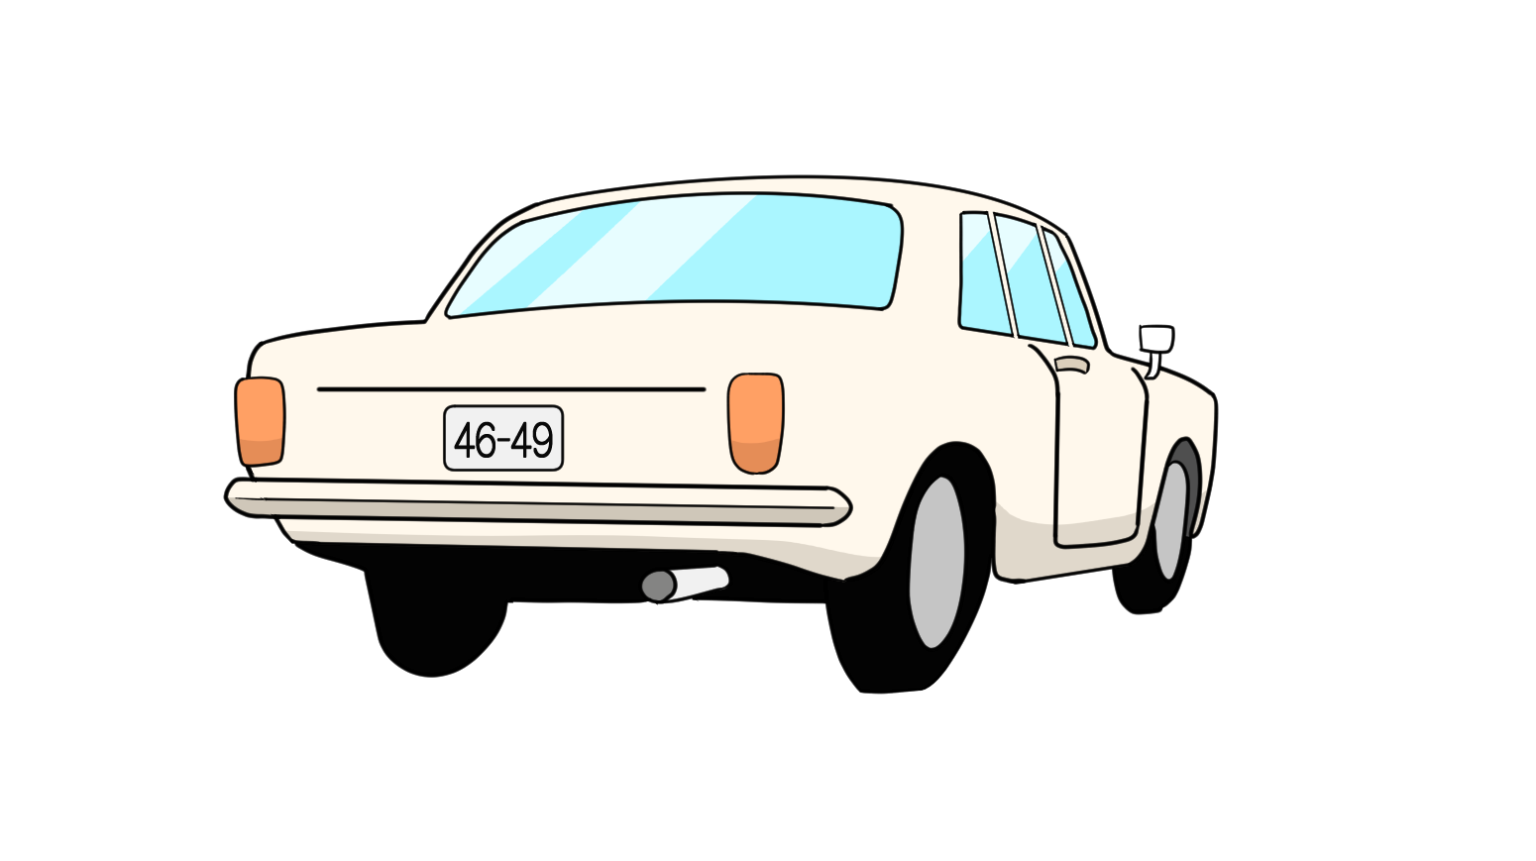 Japanese car